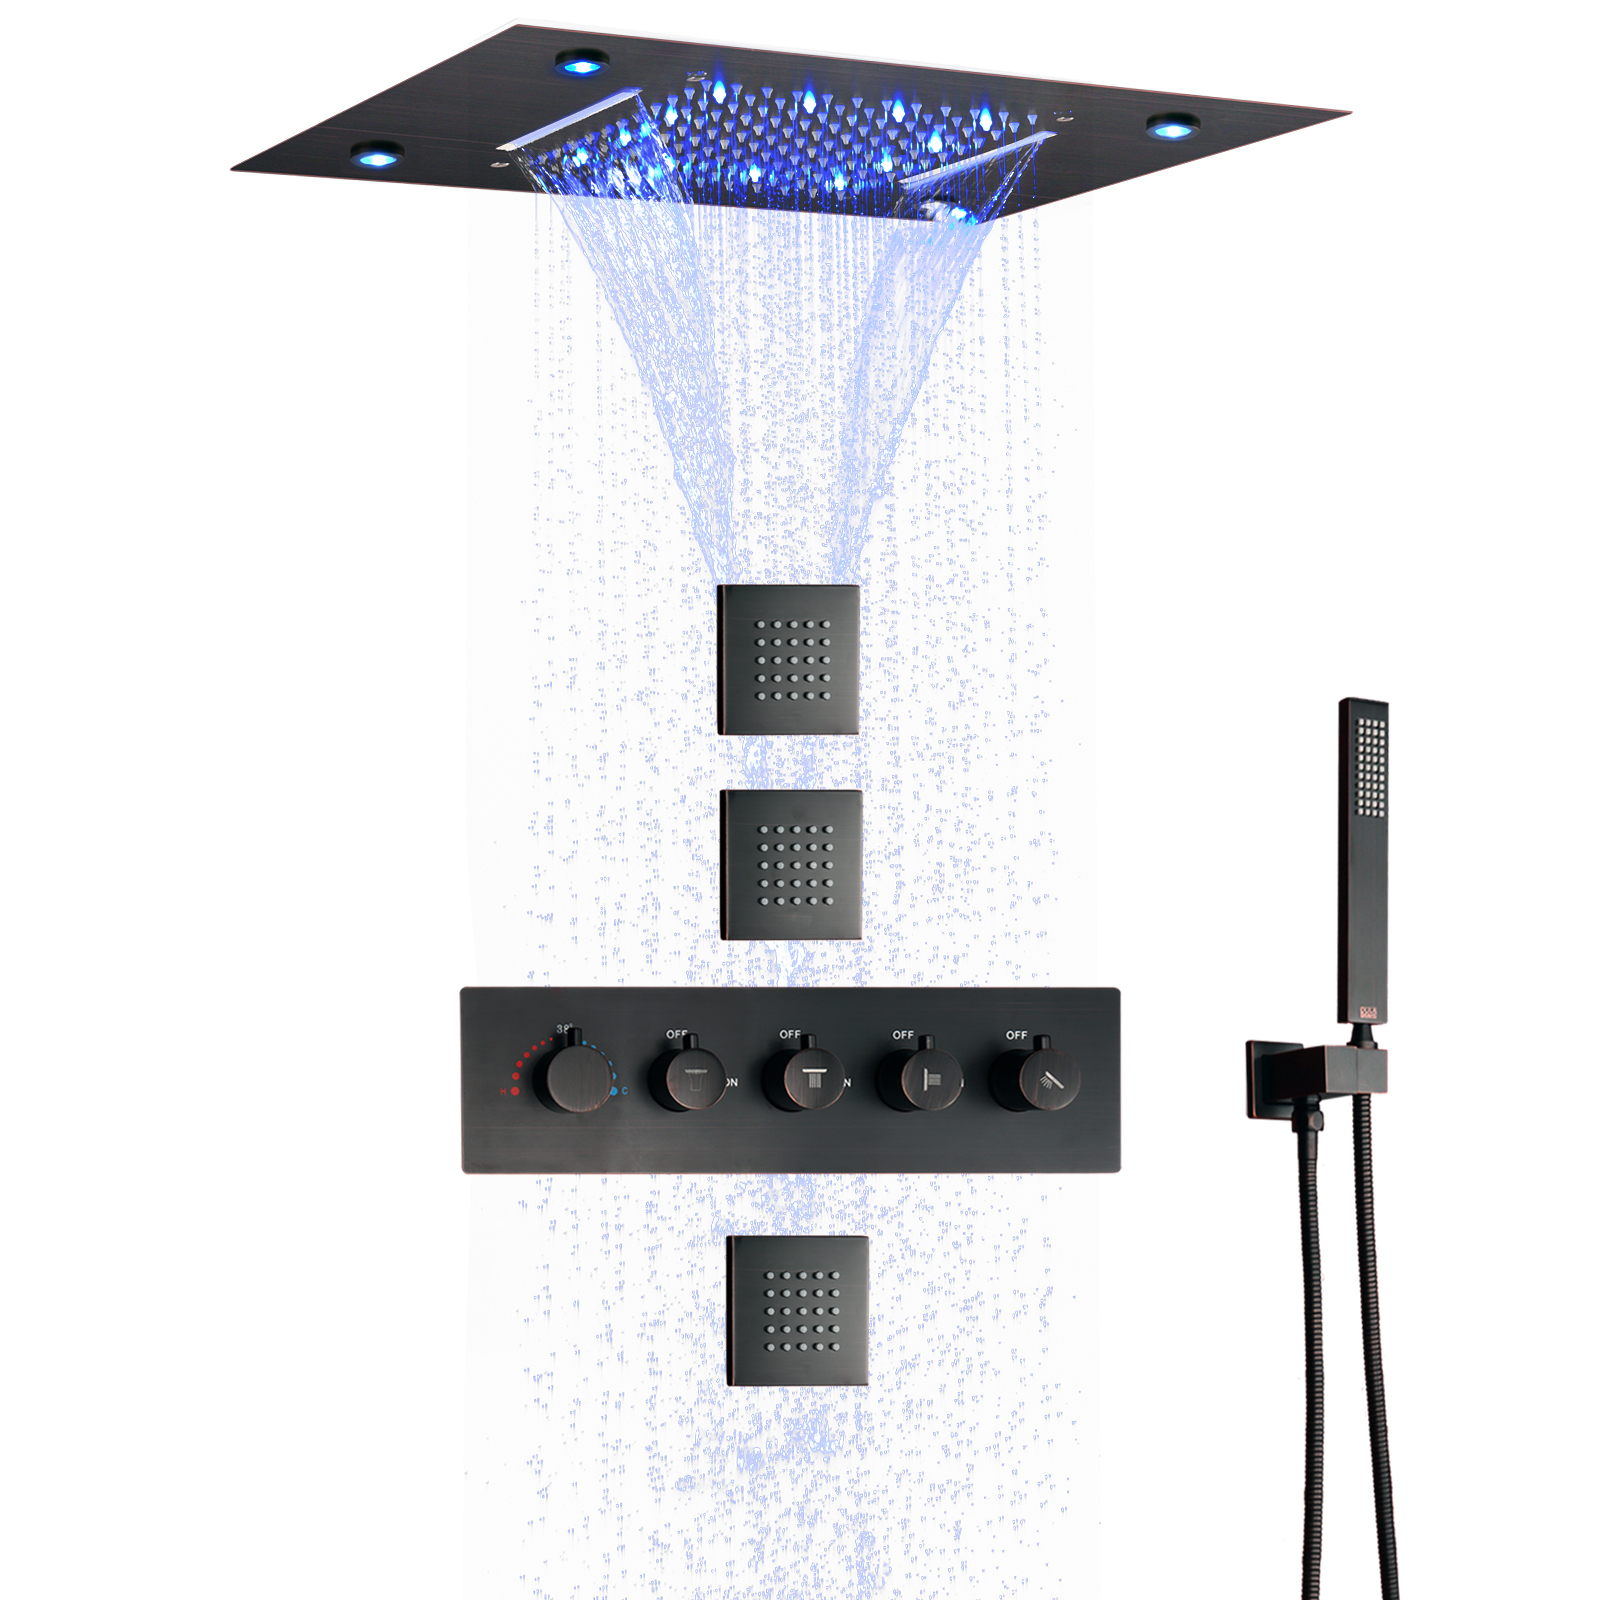 نظام دش ثرموستاتي من البرونز المطلي بالزيت 50 × 36 سم مجموعة دش مخفية LEDBathroom مع سبا شلال الأمطار